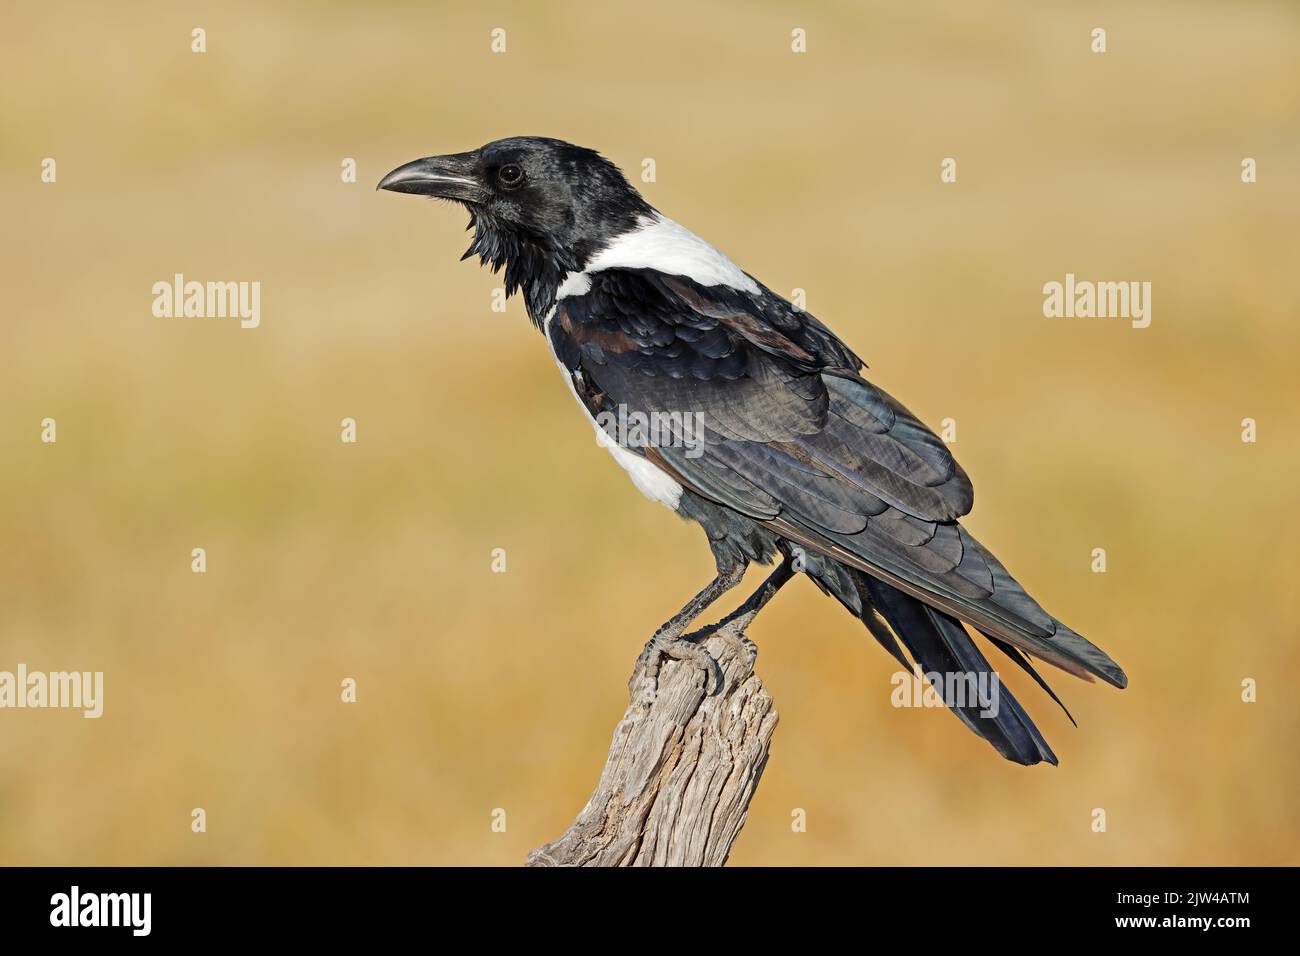 Un cuervo (corvus albus) encaramado en una rama, Parque Nacional Etosha, Namibia Foto de stock